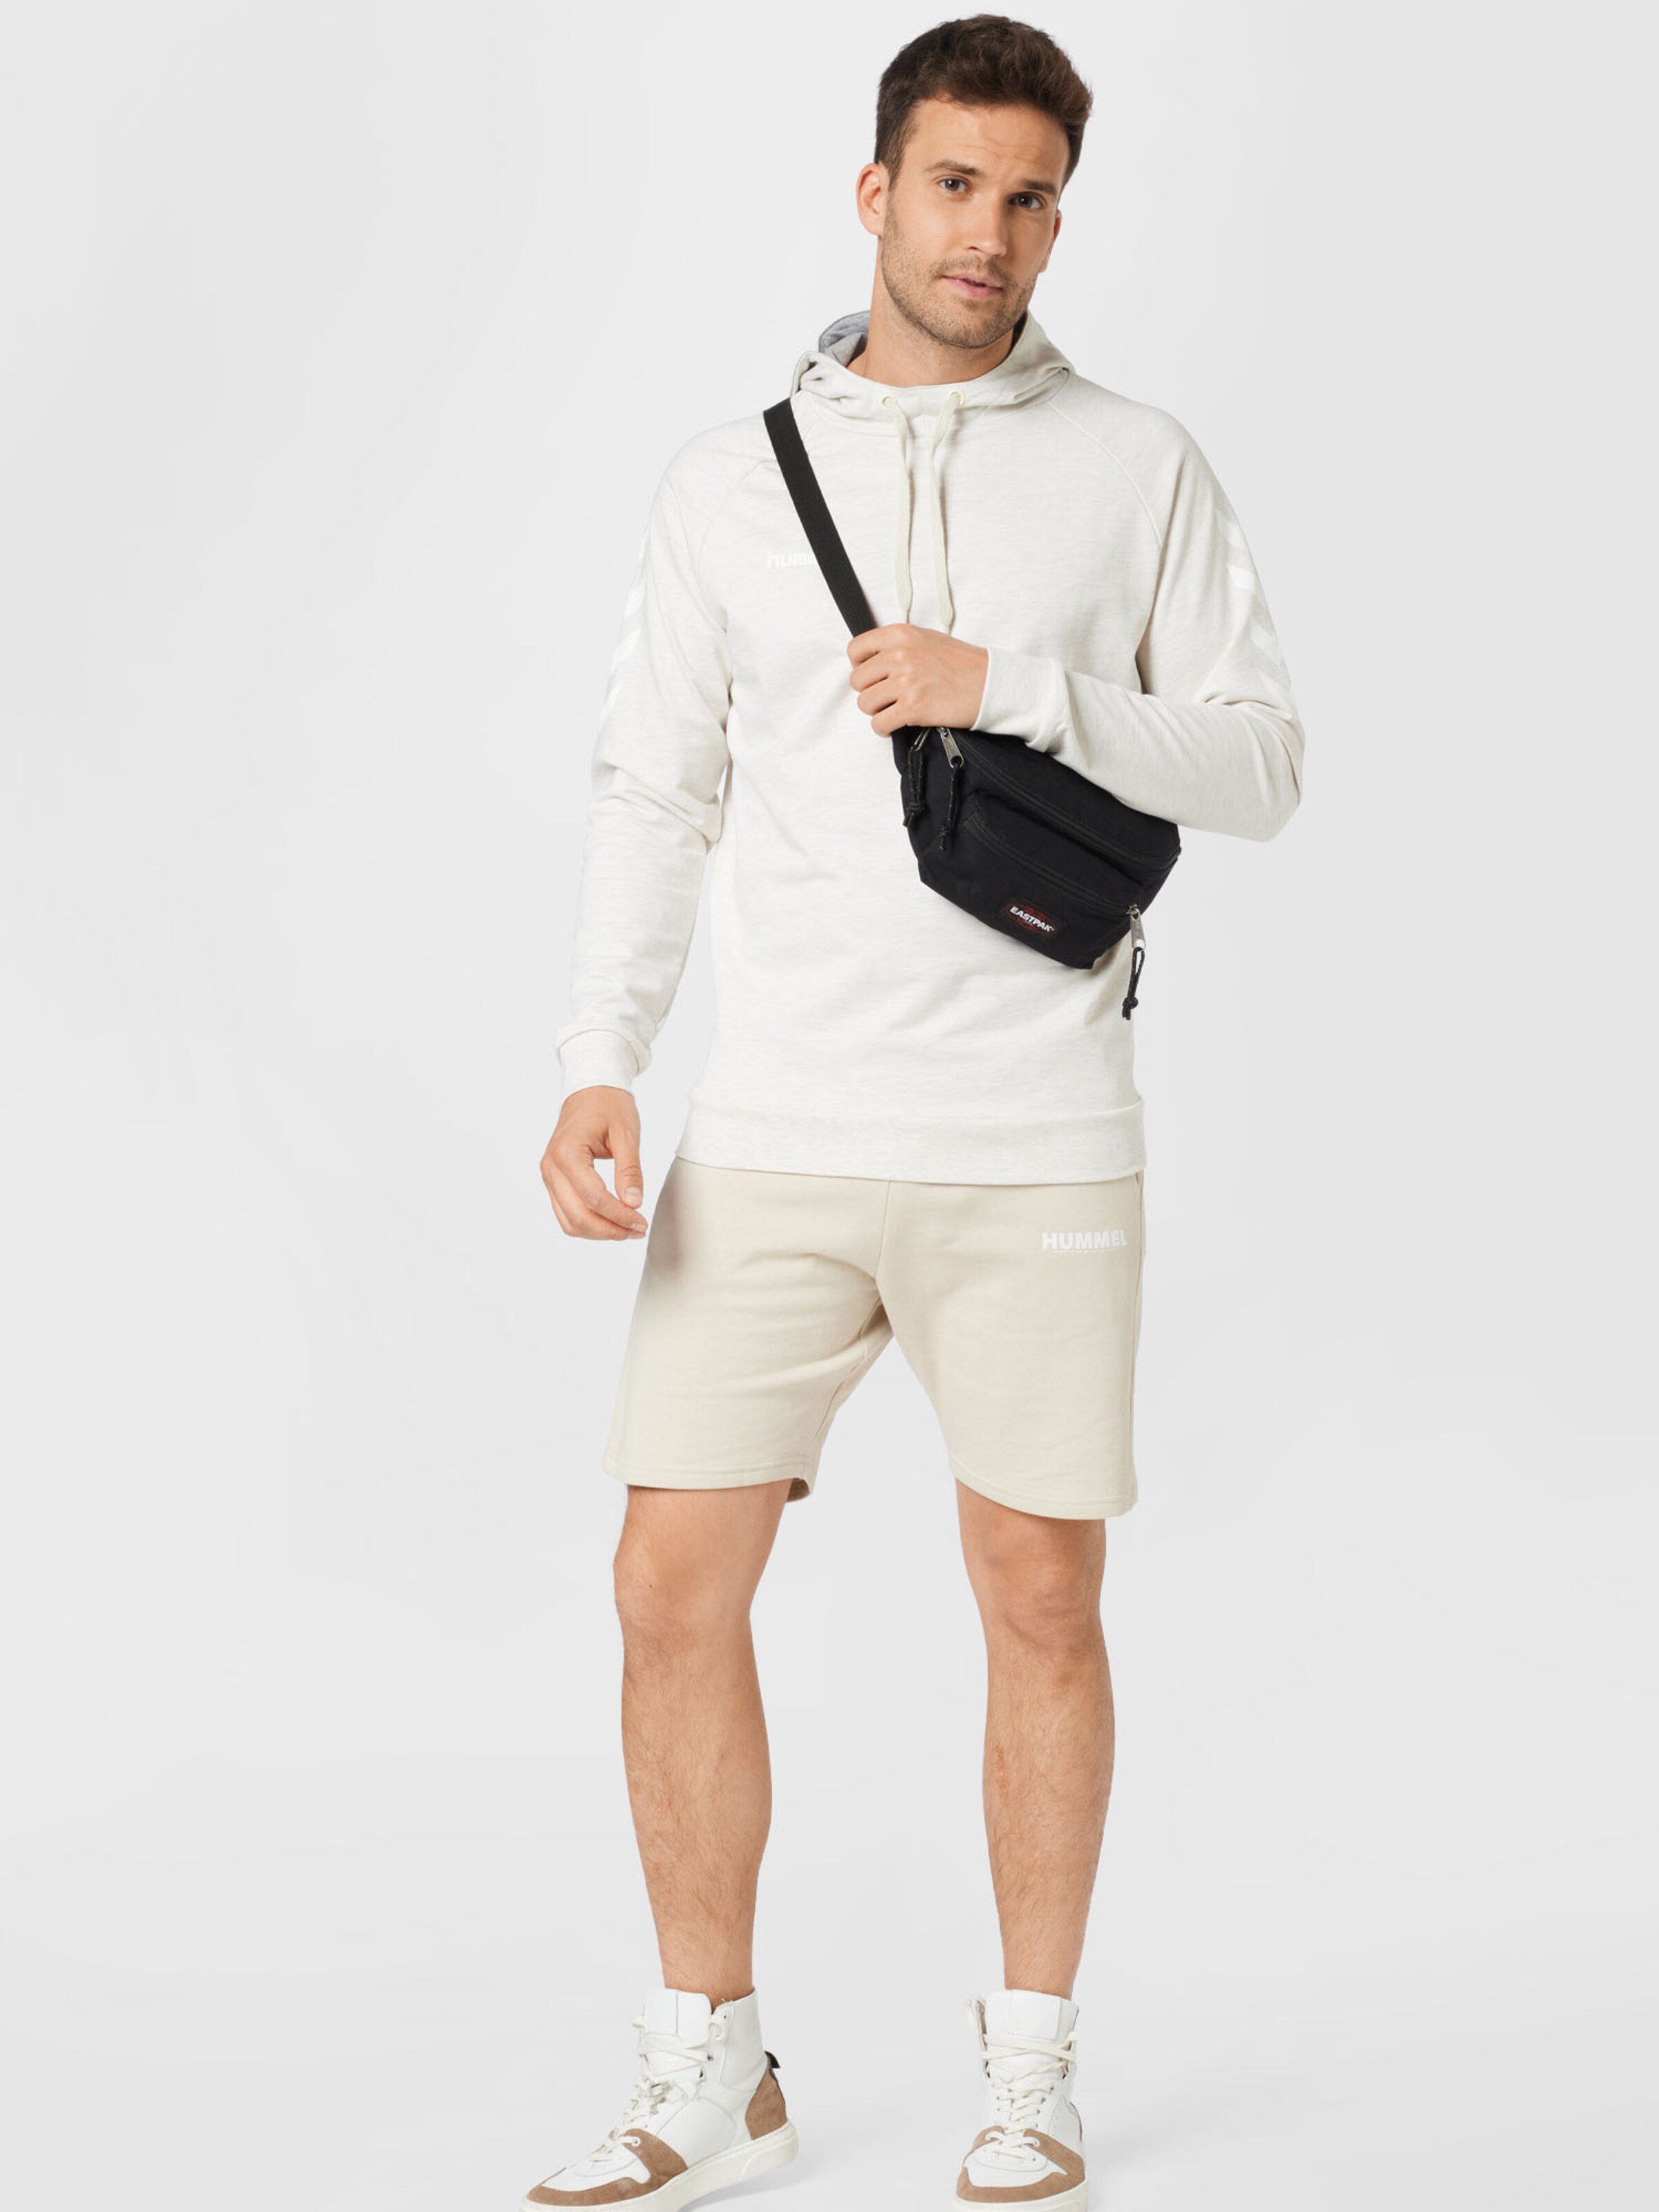 Männer Sportarten Hummel Sportsweatshirt in Weiß, Weißmeliert - AU64162